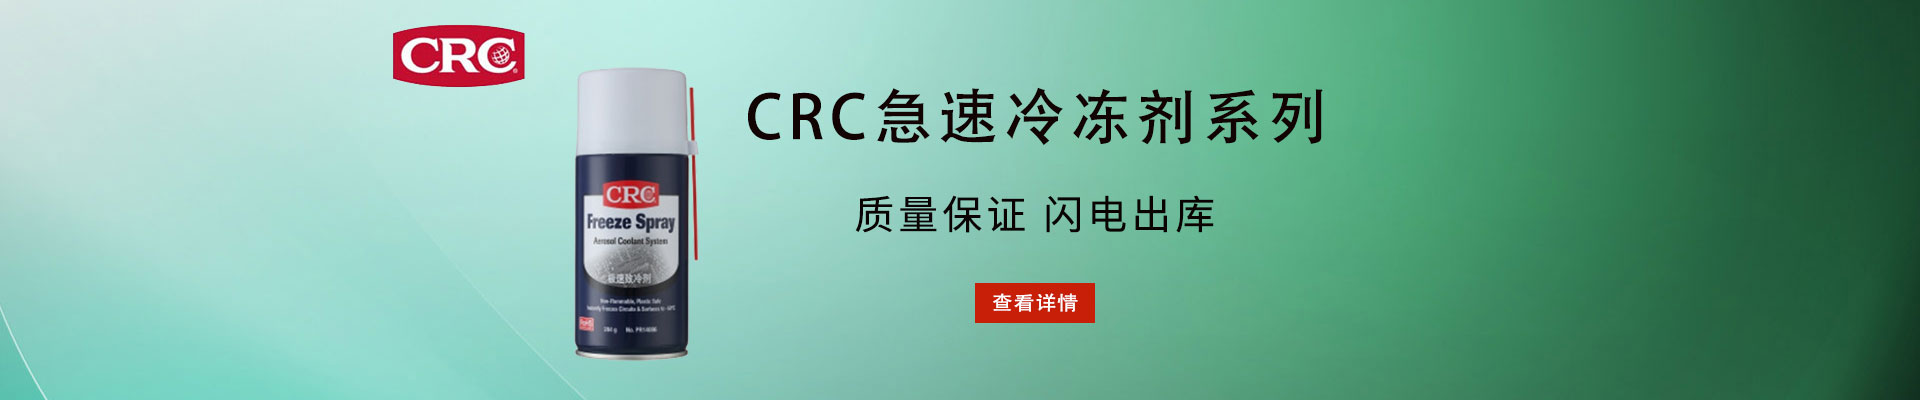 CRC|检测试剂